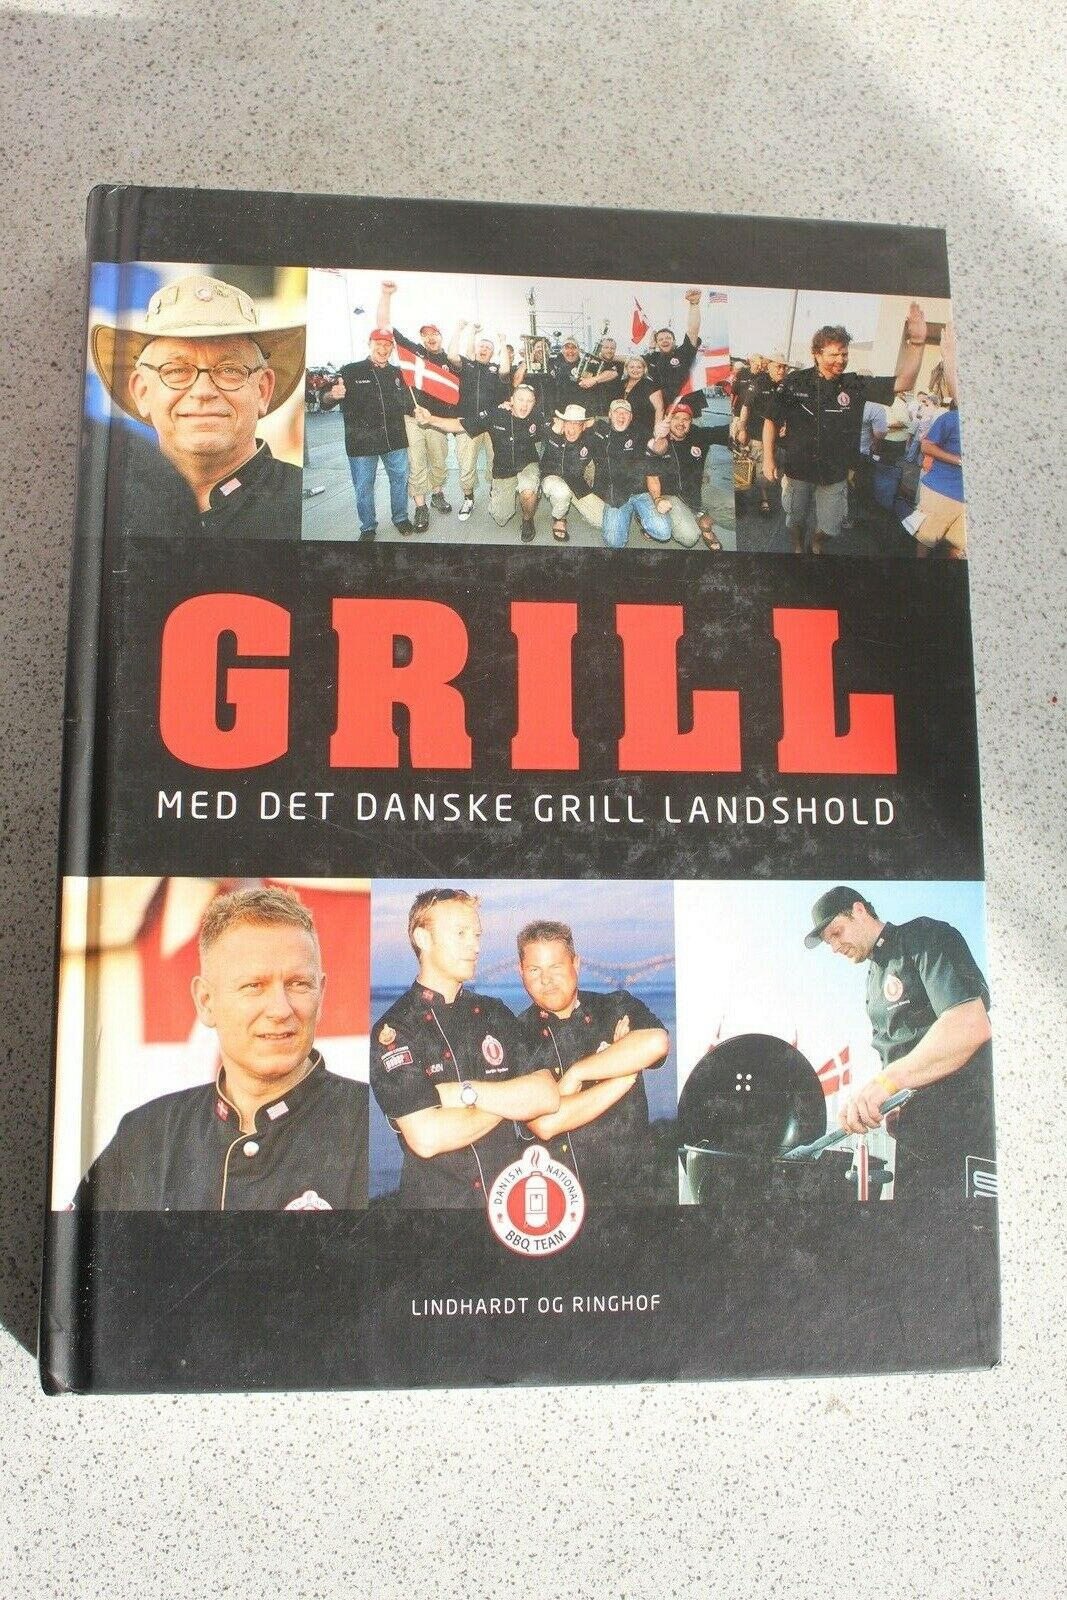 Grill med grill landshold, Stig Pedersen oa, emne: og – dba.dk – Køb og Salg af Nyt og Brugt